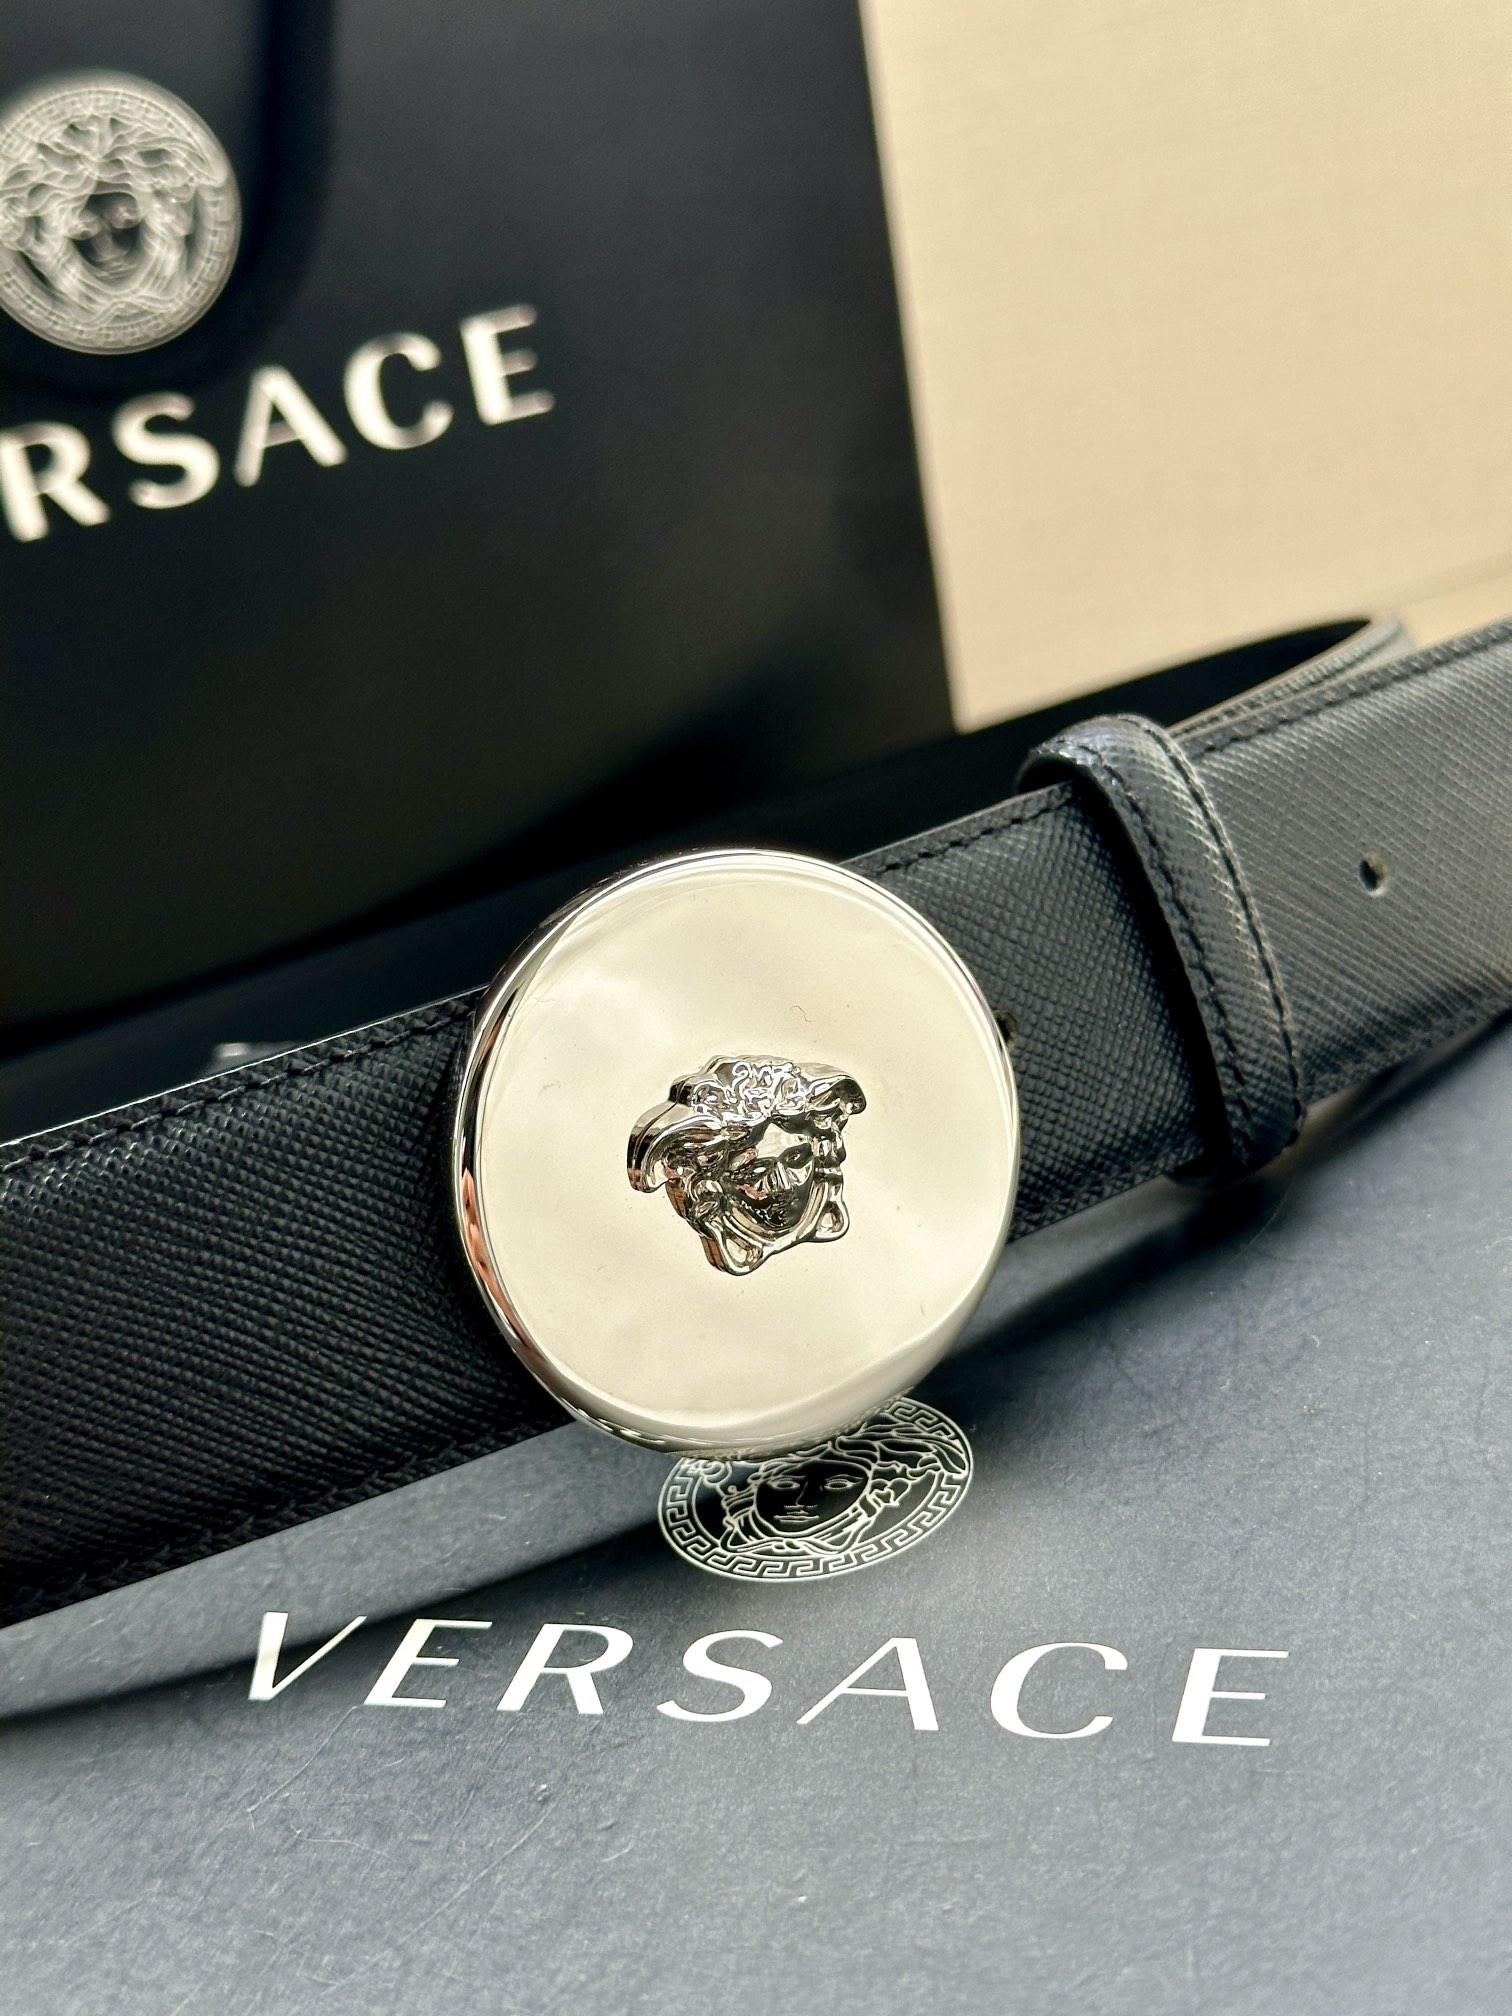 宽度4.0cm范思哲此款平纹皮底腰带饰有标志性的Versace美杜莎头像扣彰显品牌格调是一款精美的衣橱必